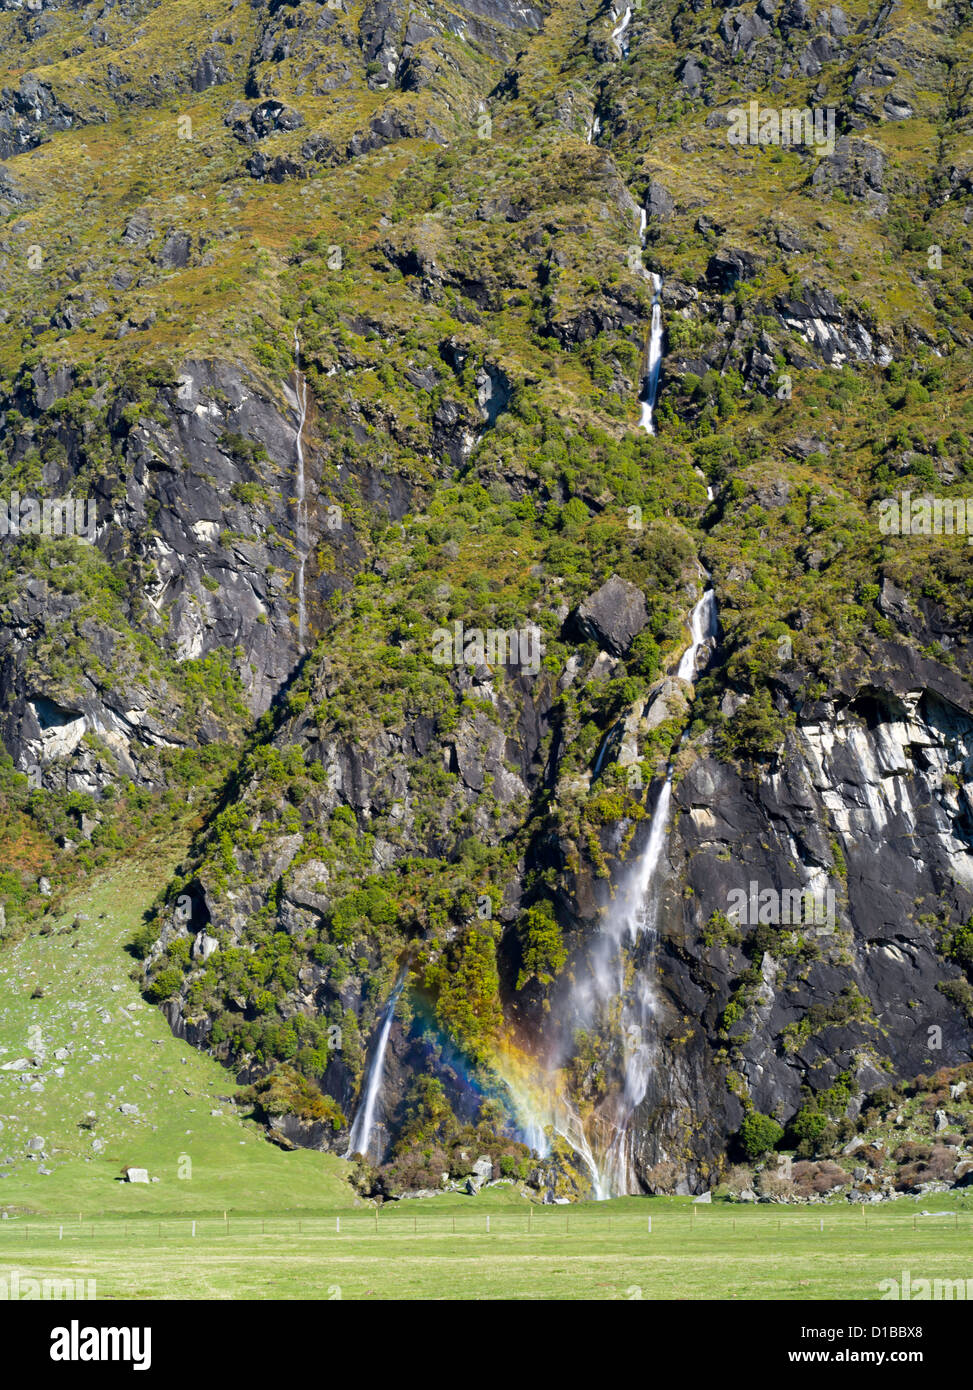 Vista de la horqueta falls, Harris Mountains, a lo largo del río matukituki, cerca del monte parque nacional y aspirantes a Wanaka, Nueva Zelanda Foto de stock